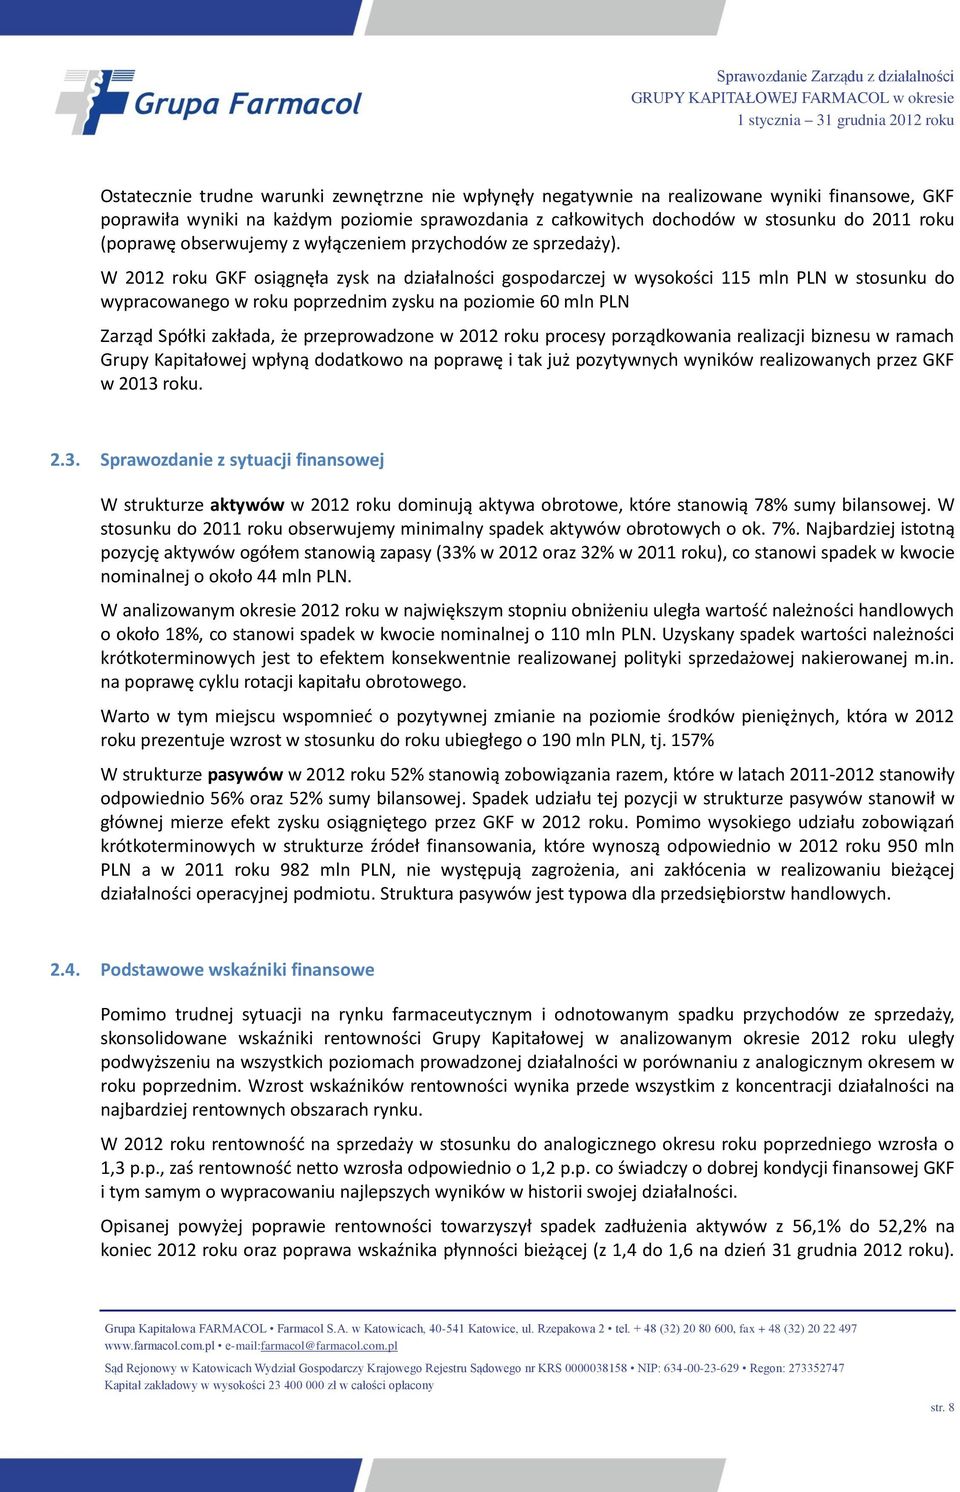 W 2012 roku GKF osiągnęła zysk na działalności gospodarczej w wysokości 115 mln PLN w stosunku do wypracowanego w roku poprzednim zysku na poziomie 60 mln PLN Zarząd Spółki zakłada, że przeprowadzone